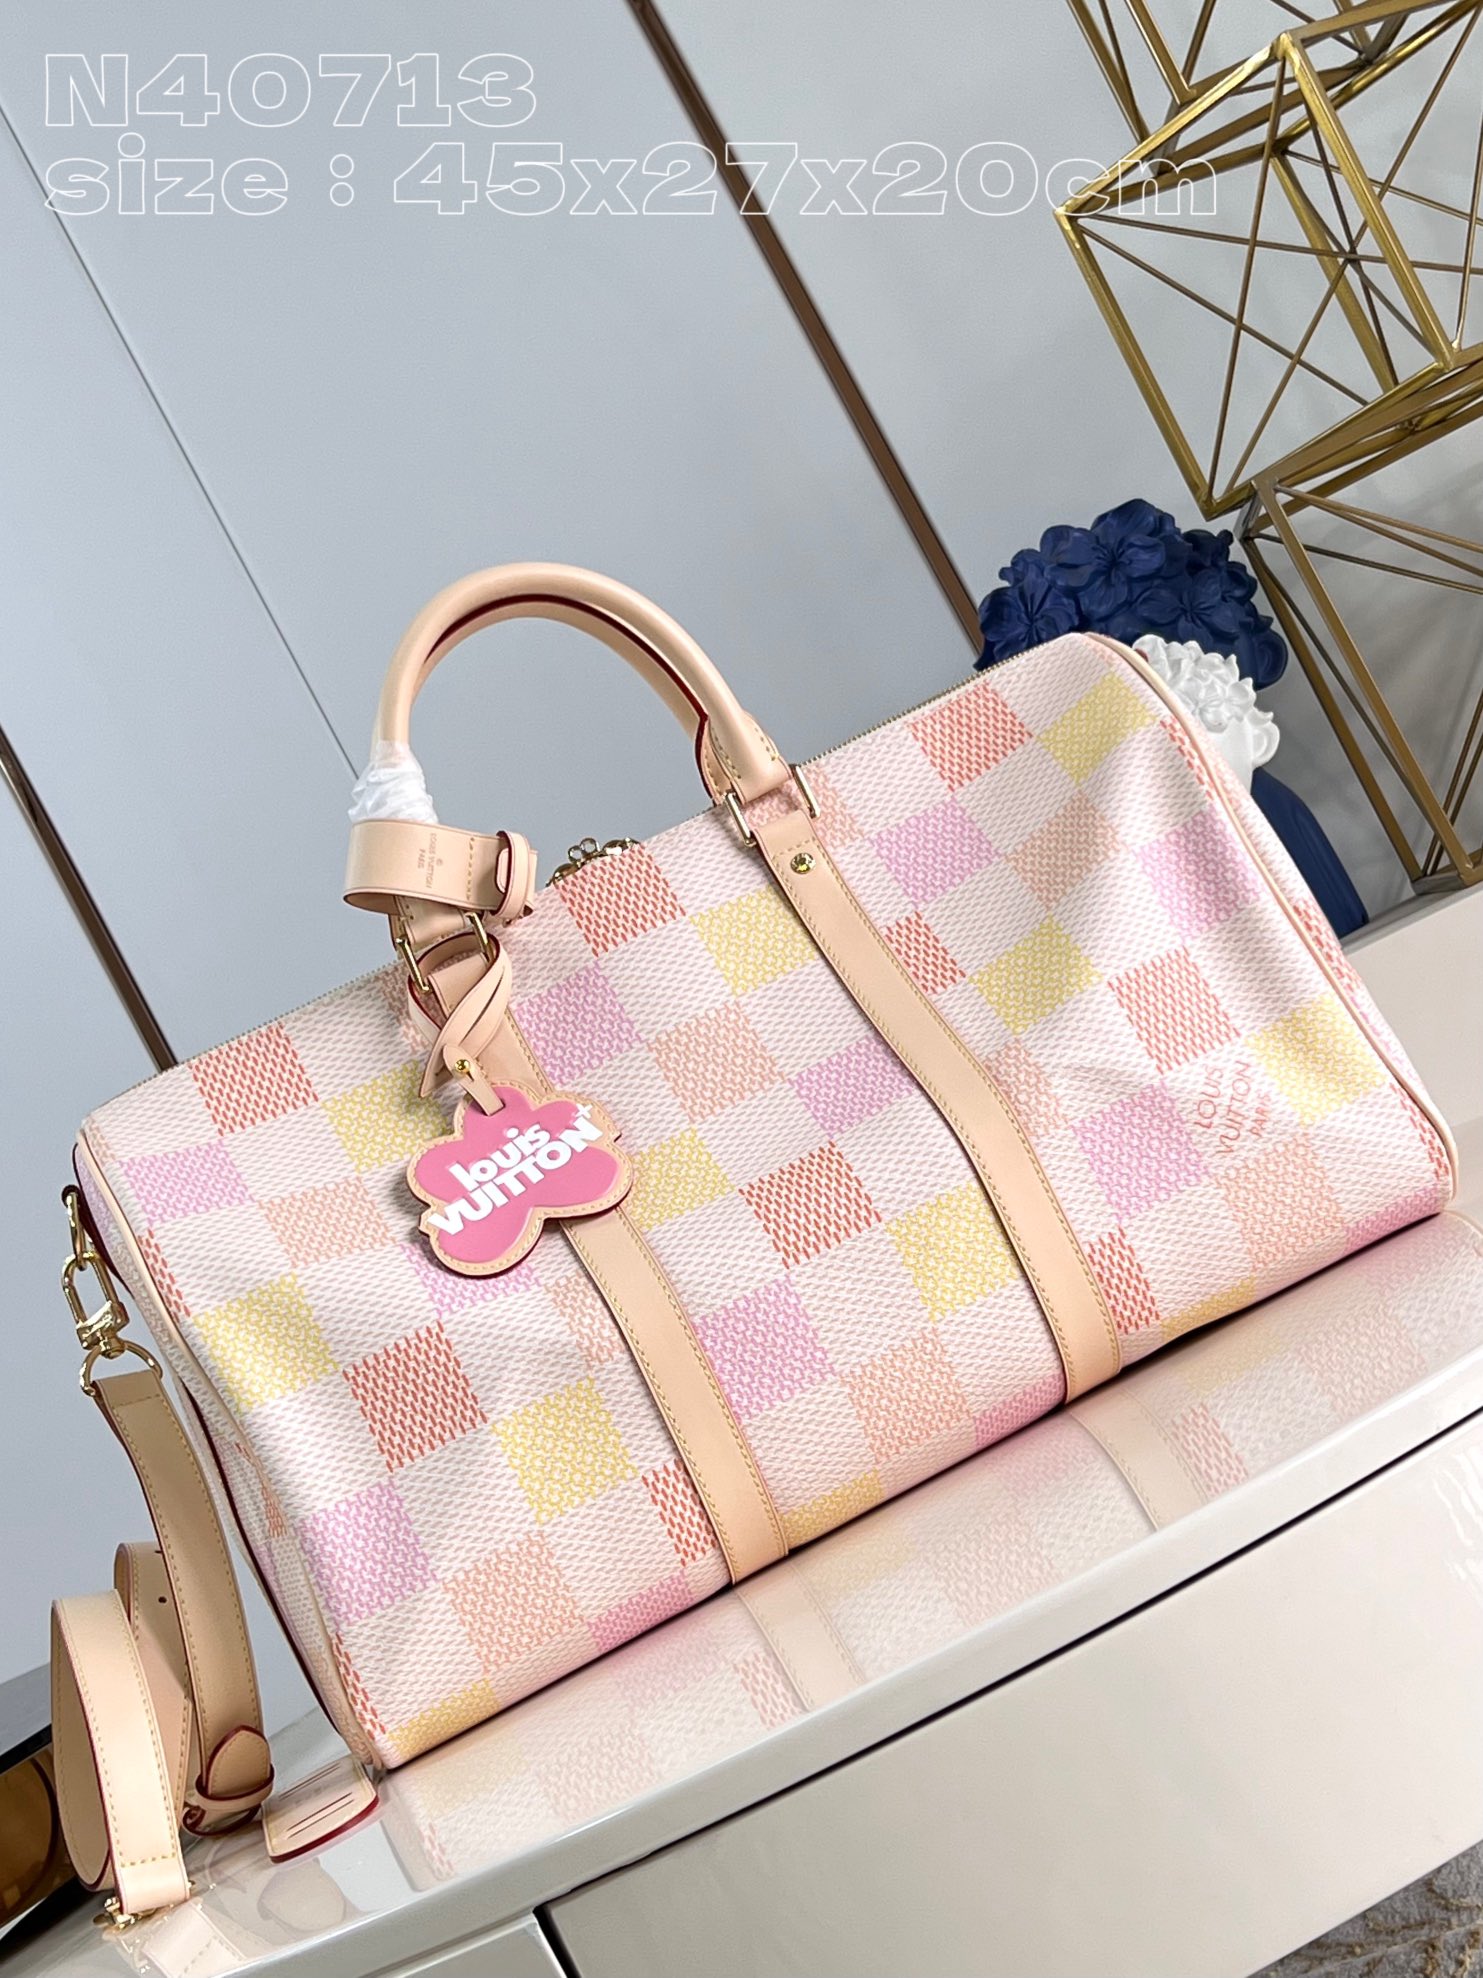 Louis Vuitton LV Keepall mirror quality
 Bags Handbags Pink Canvas Cowhide N40713